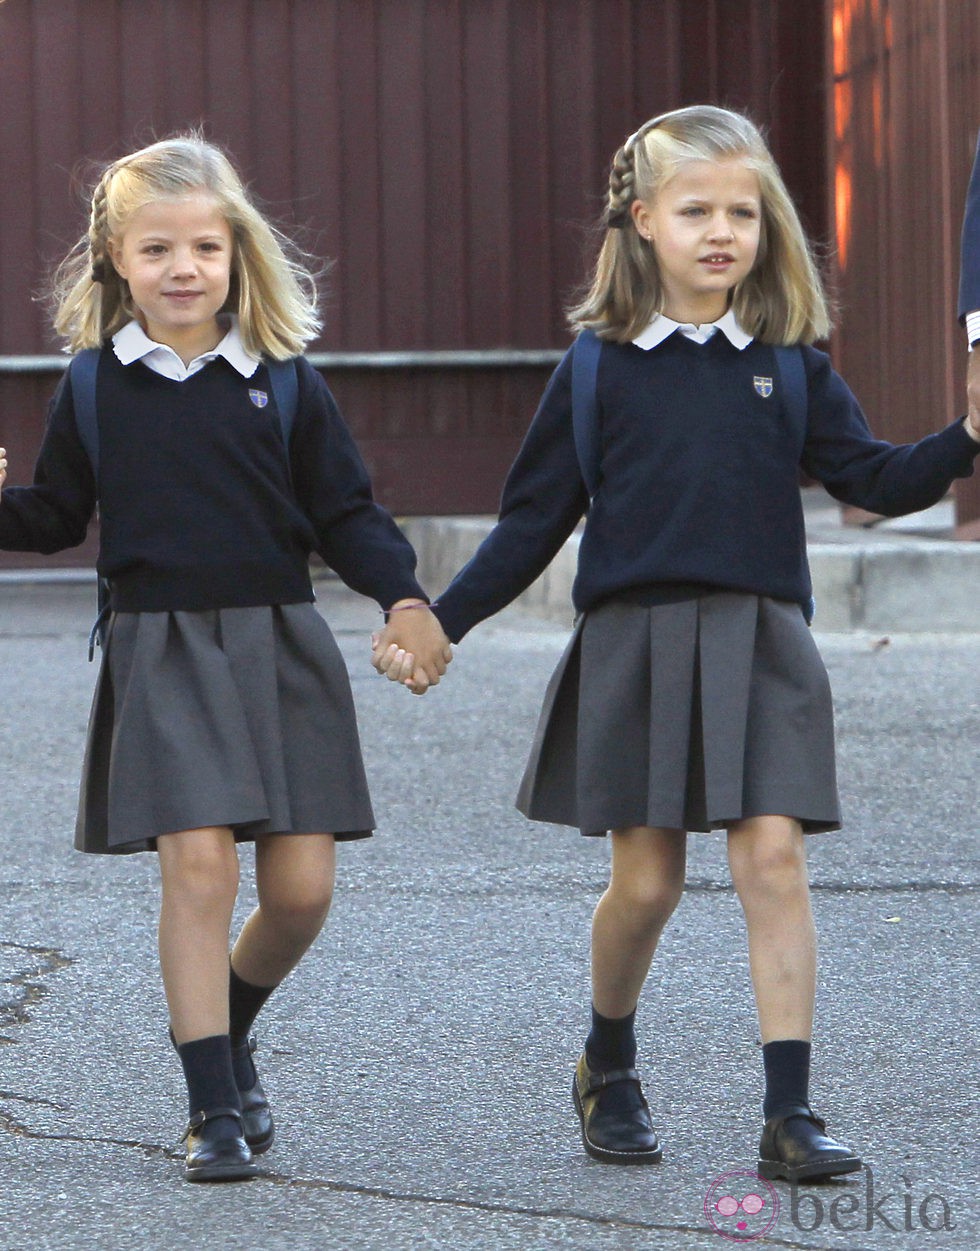 Las Infantas Leonor y Sofía en su primer día de colegio